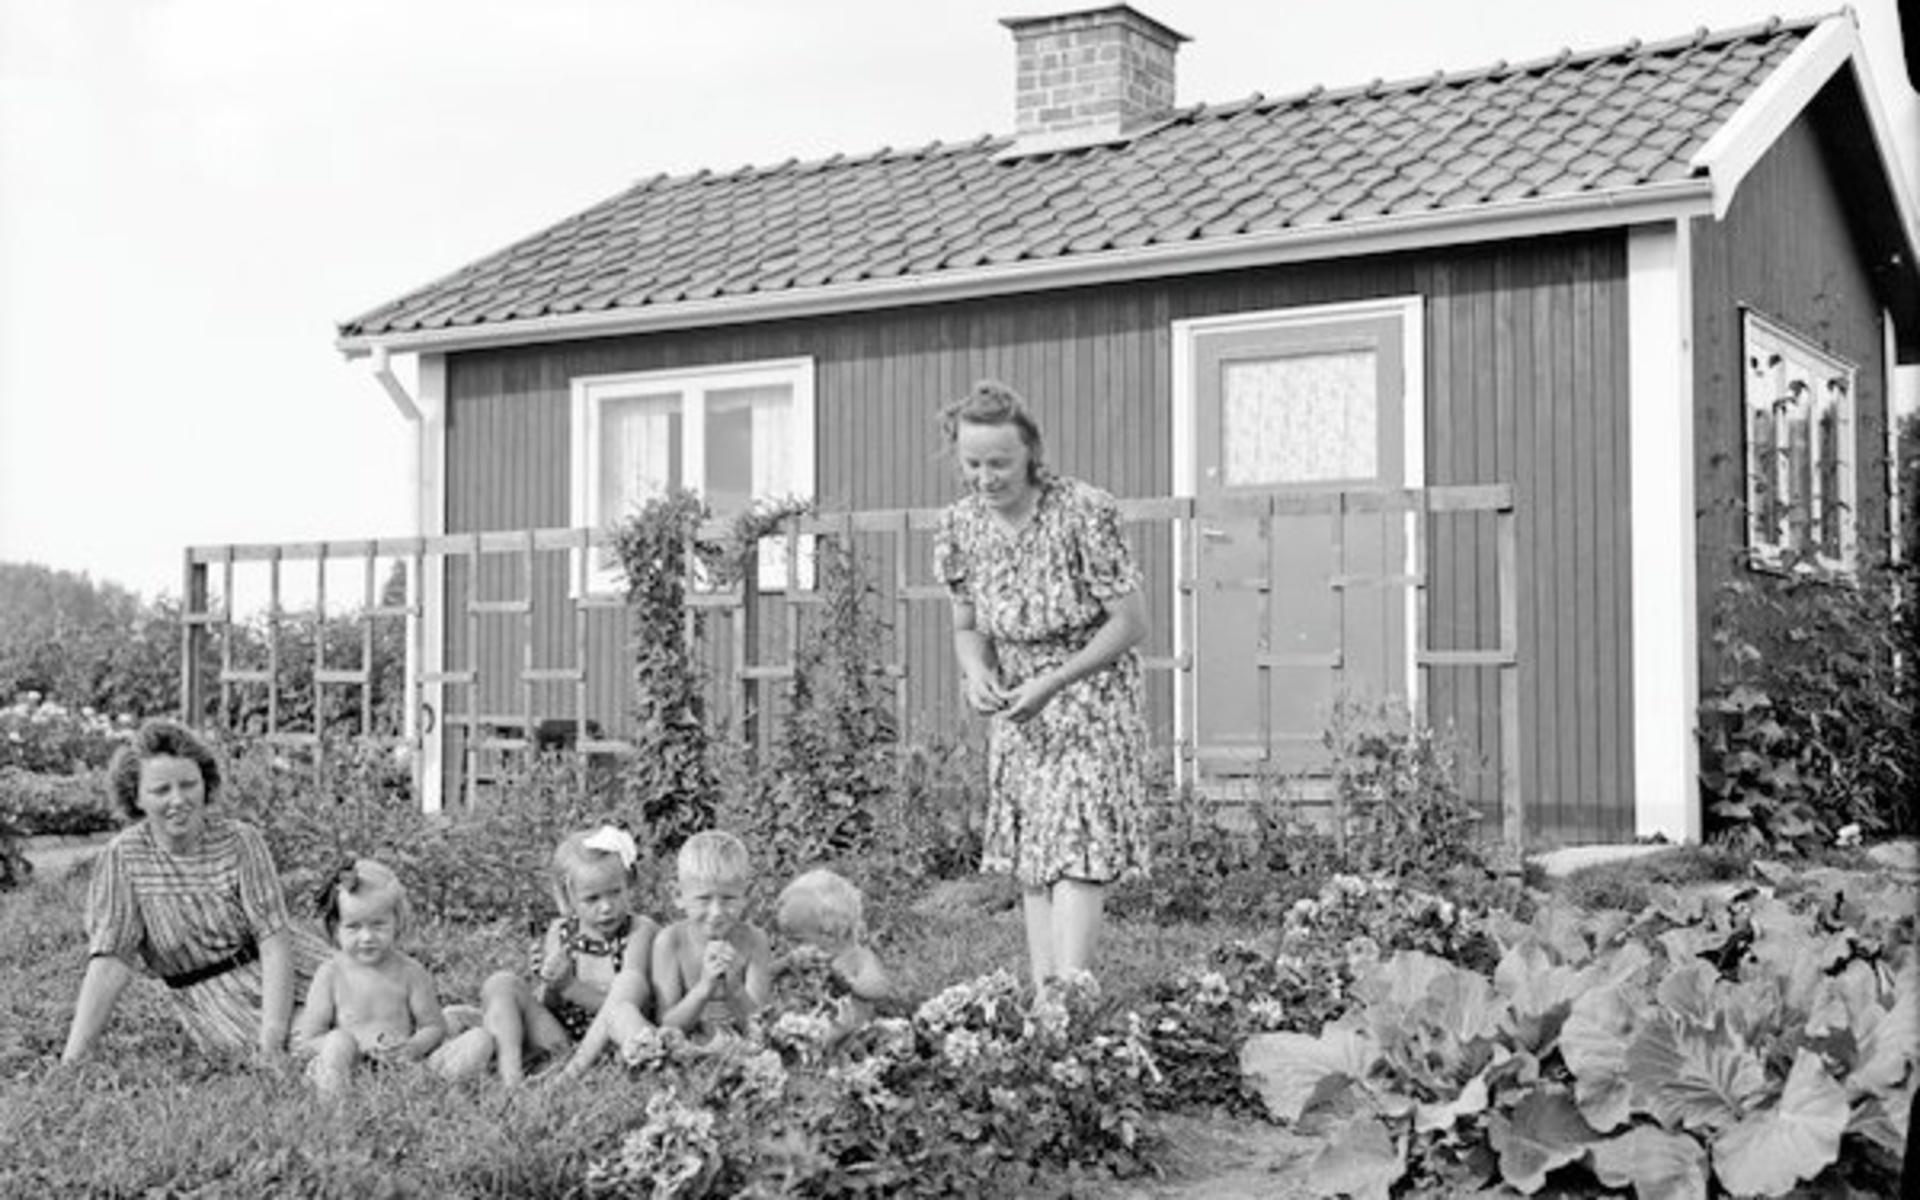 1940-tal. Kolonistuga vid Tunaberg, Uppsala. Källa: Upplandsmuseets samlingar